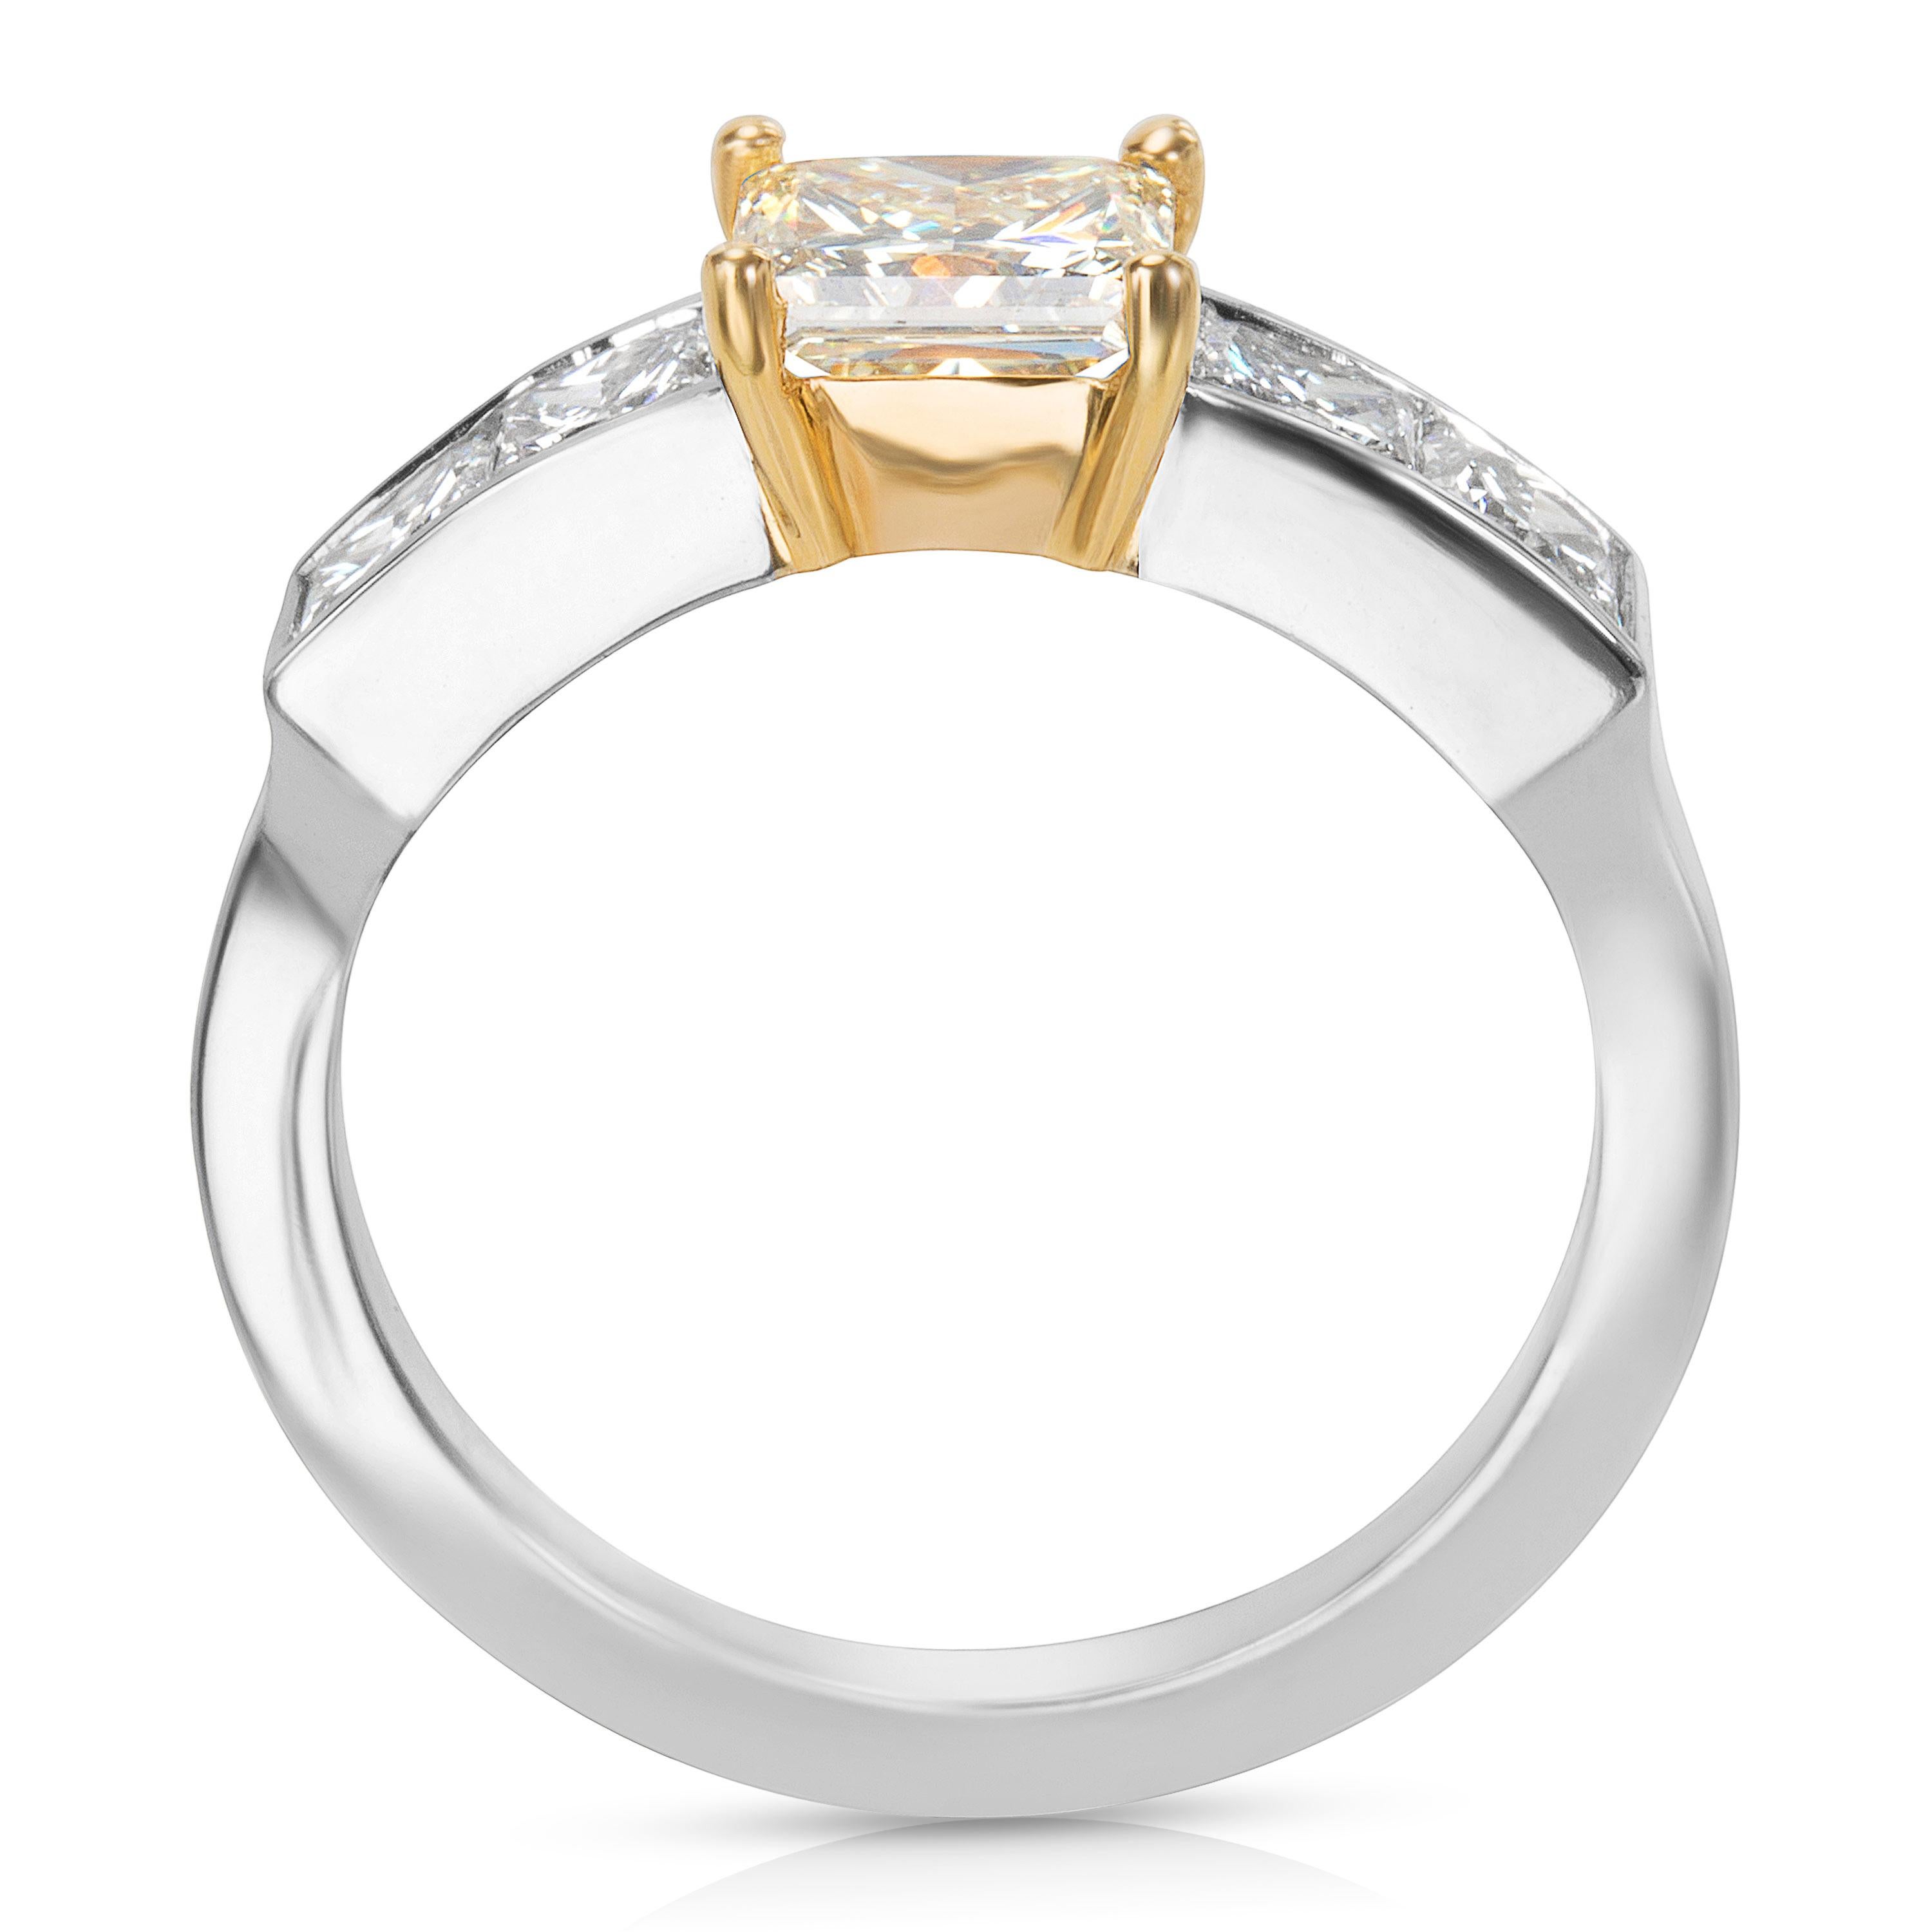 Princess Cut GIA Certified Diamond Engagement Ring in 18 Karat YG and Plat 2.13 Carat